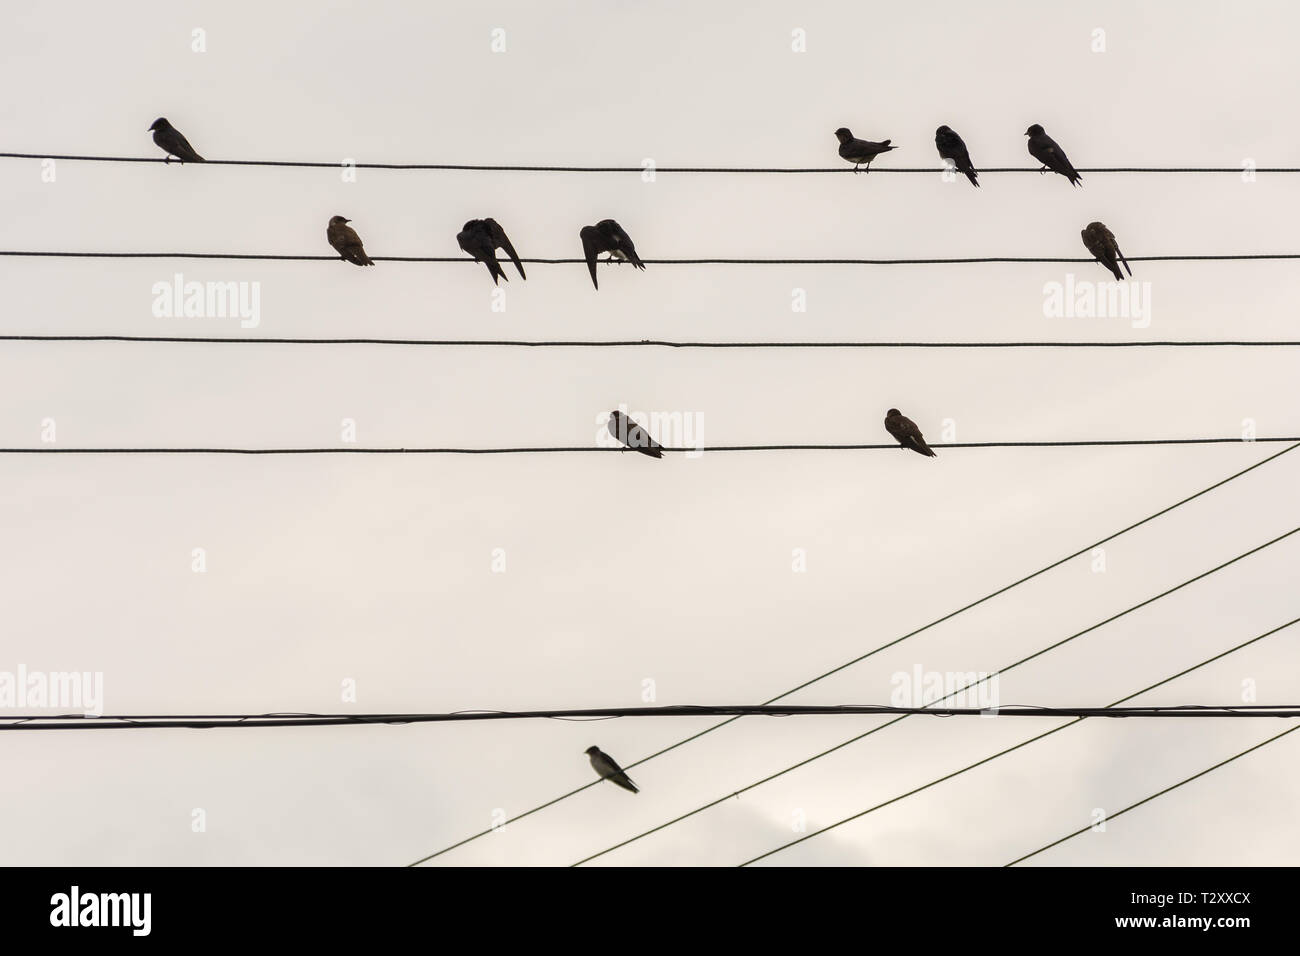 2019, janvier. Florianopolis, Brésil.Groupe de petits oiseaux sur des fils électriques tout comme une partition de musique, à Joaquina Plage. Banque D'Images